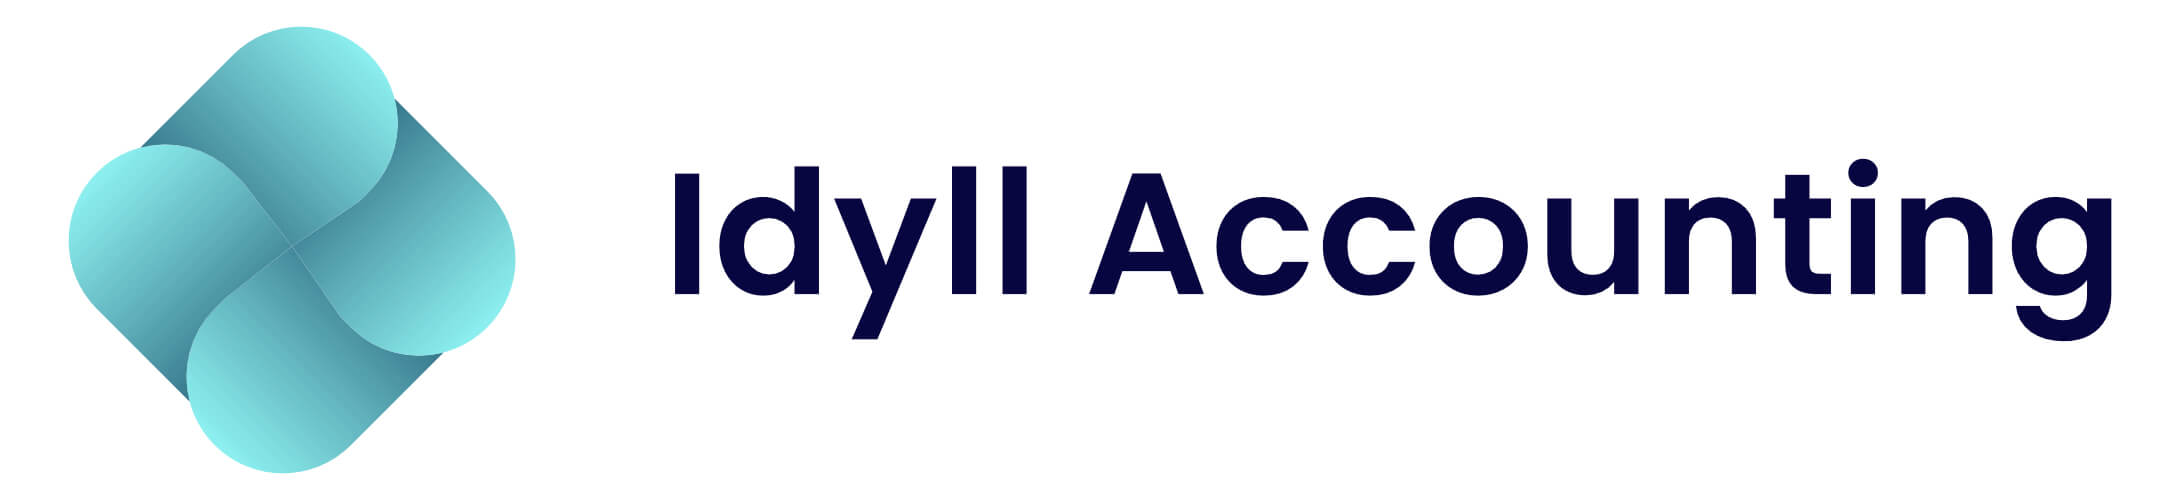 Winner Image - IDYLL Accounting